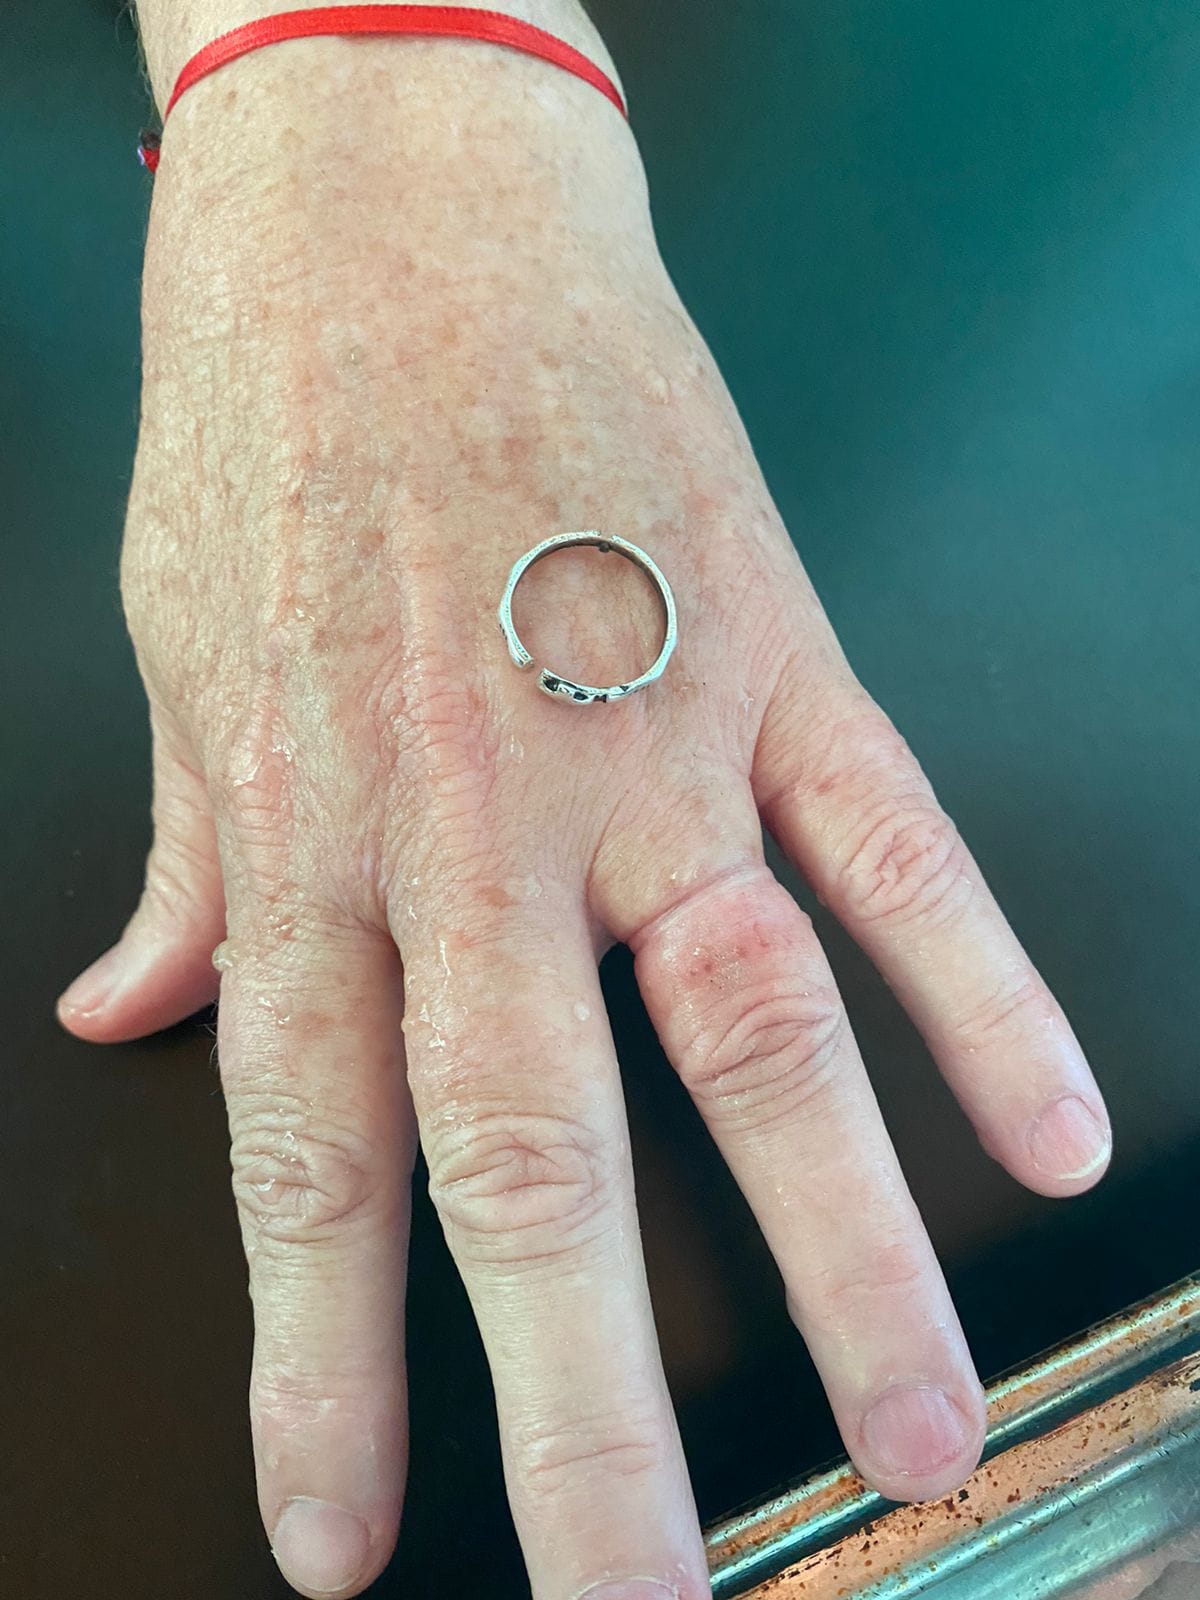 Bomberos asistieron a una mujer y le sacaron un anillo que dificultaba la circulación en su mano imagen-4